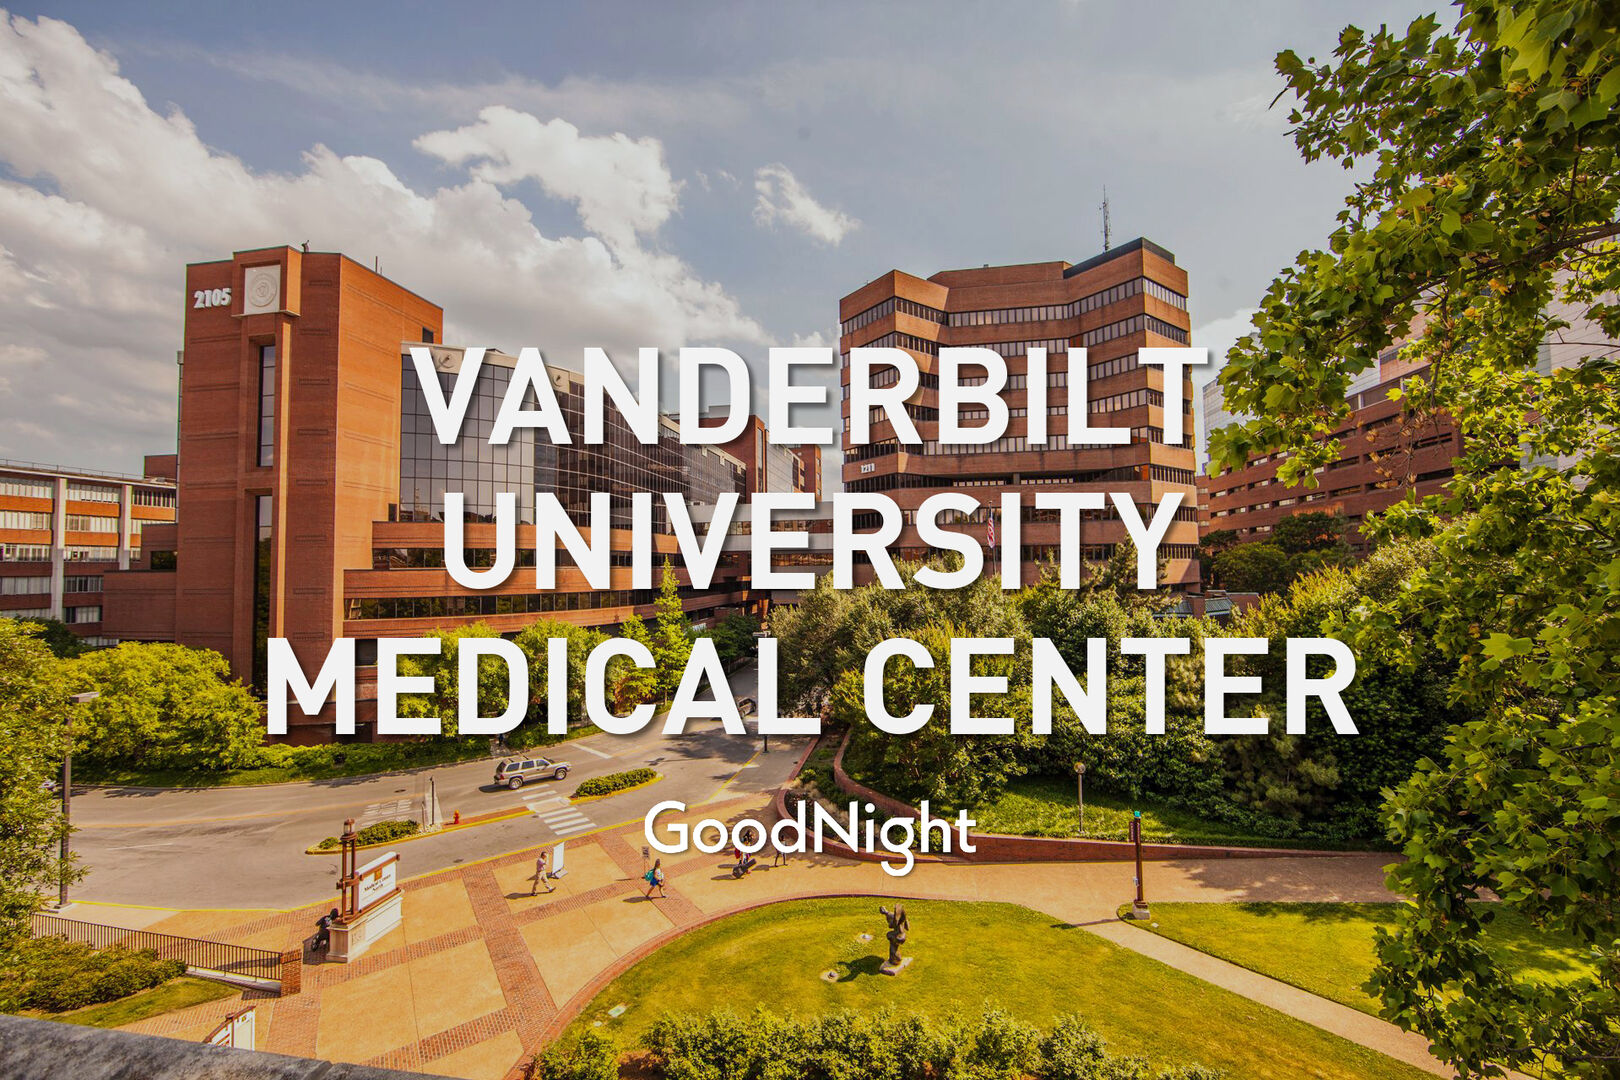 10 mins: Vanderbilt University